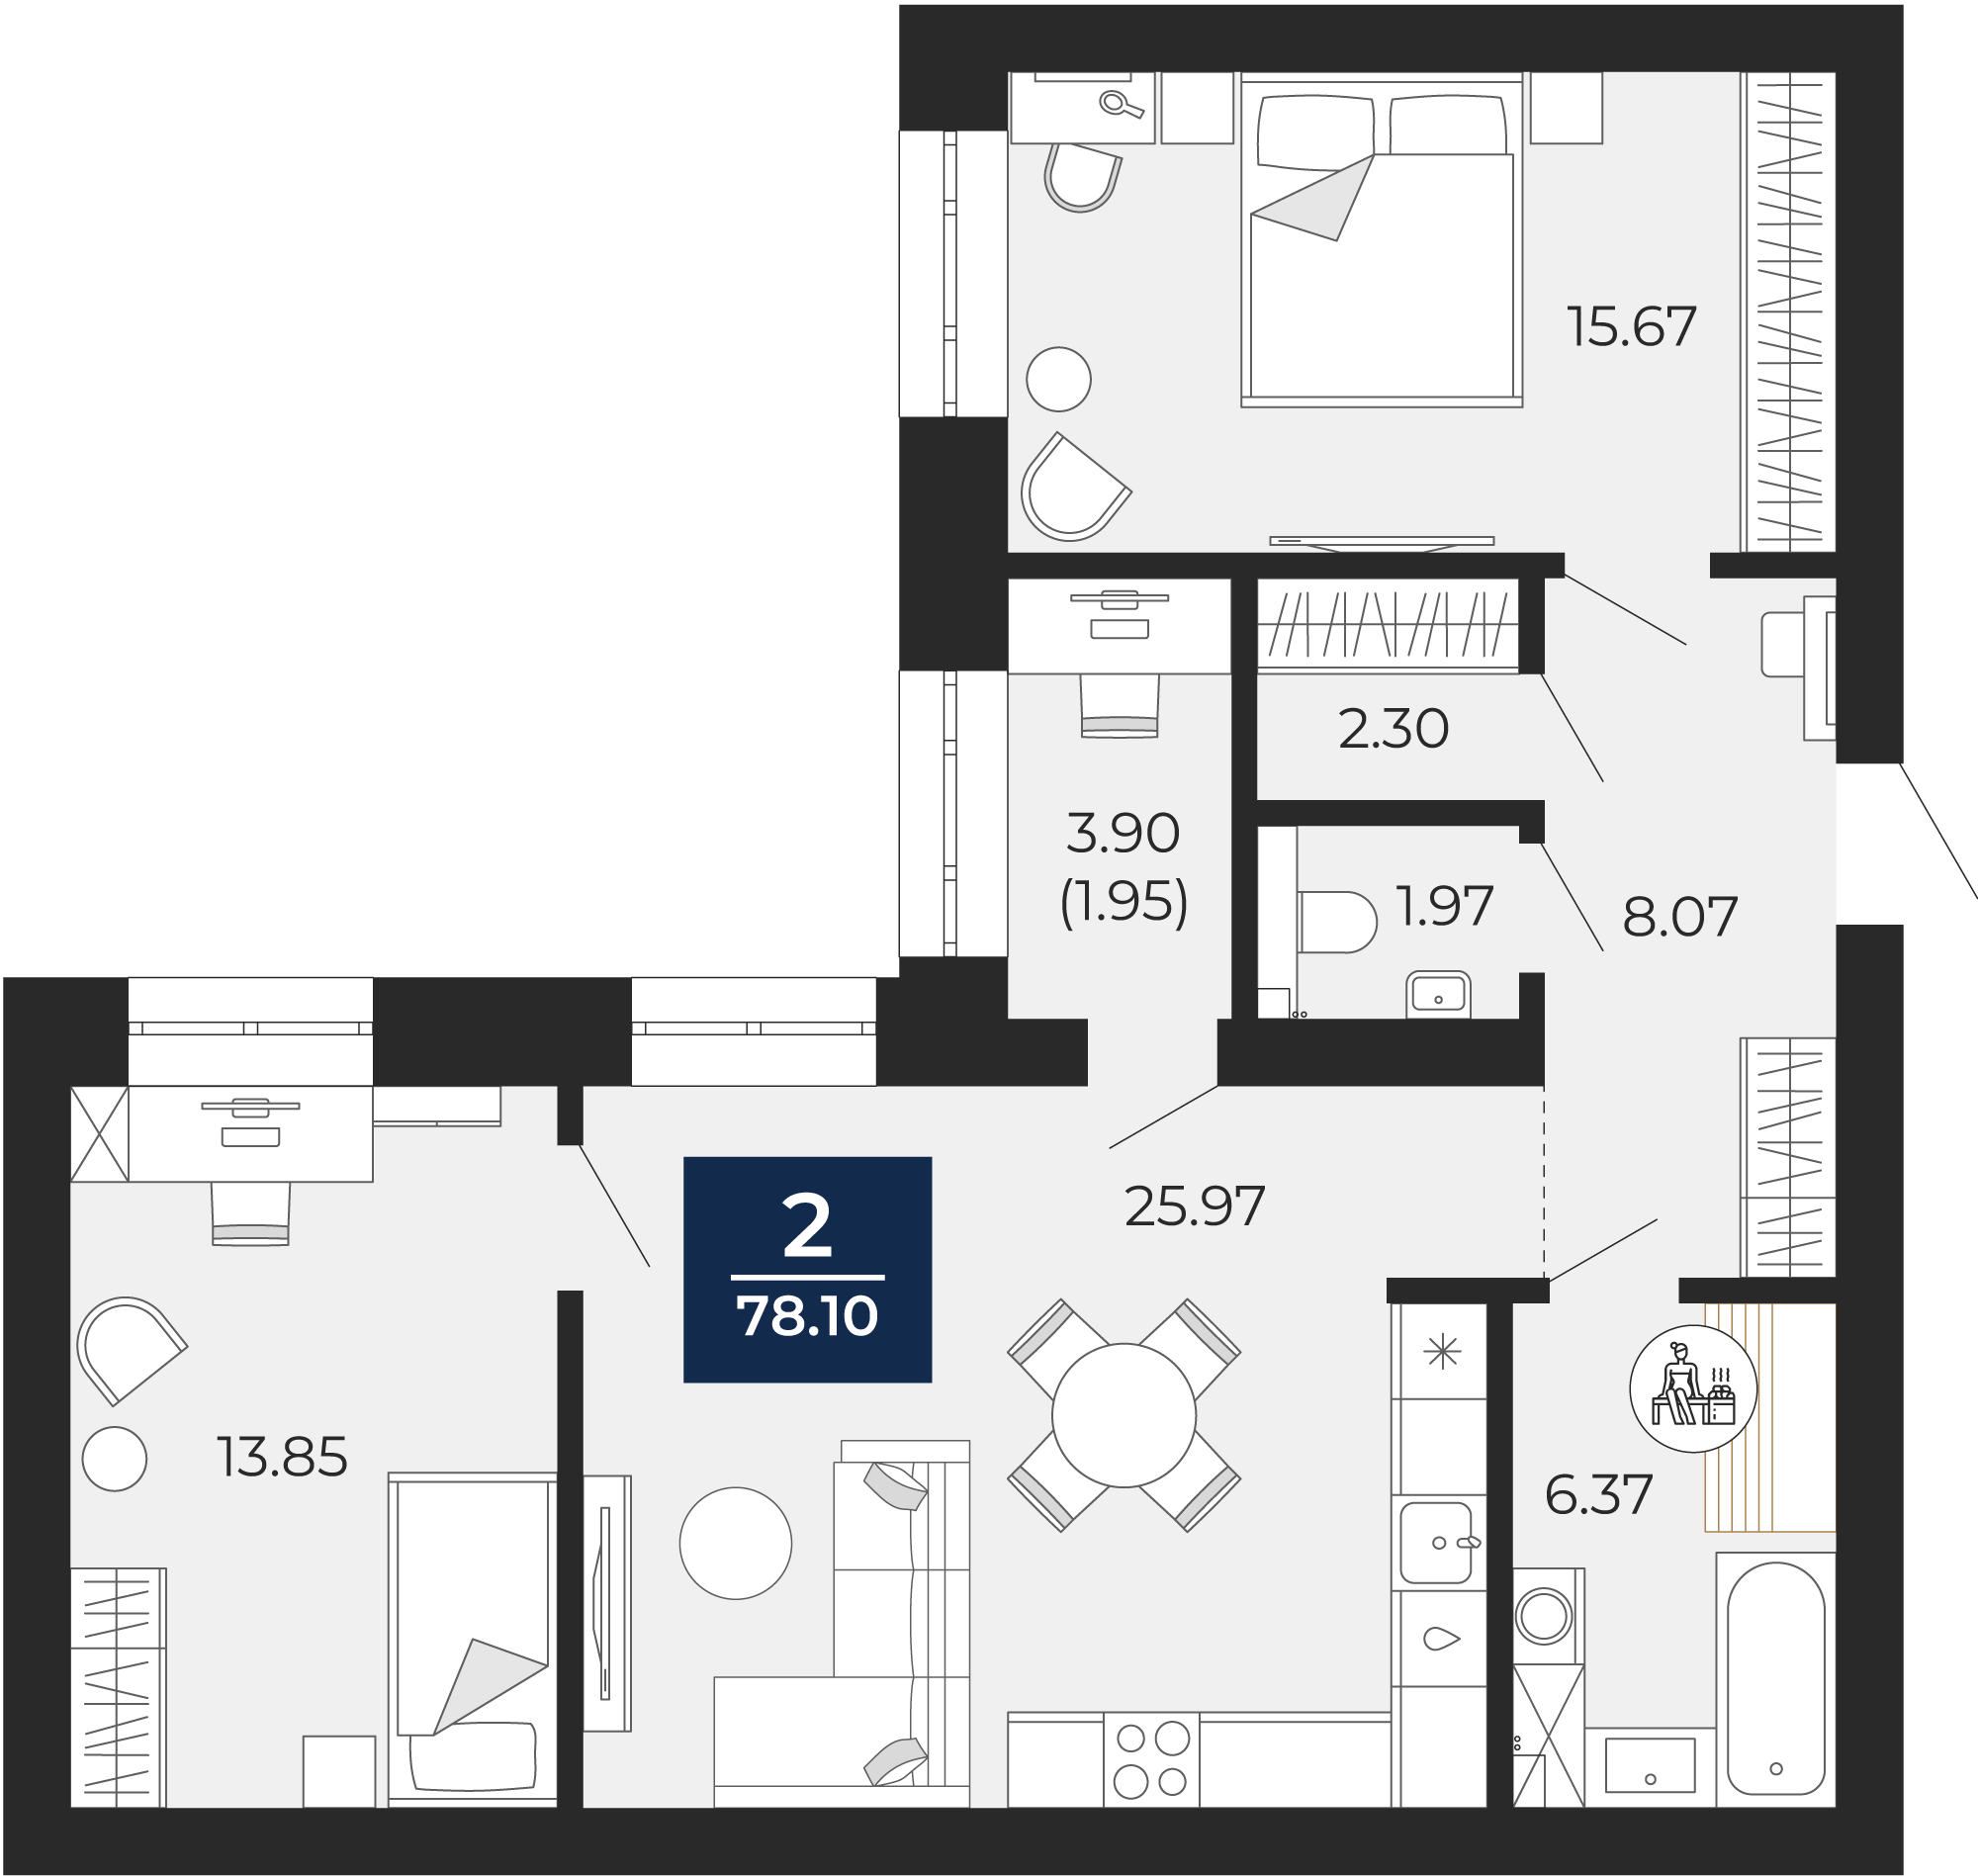 Квартира № 180, 2-комнатная, 78.1 кв. м, 10 этаж